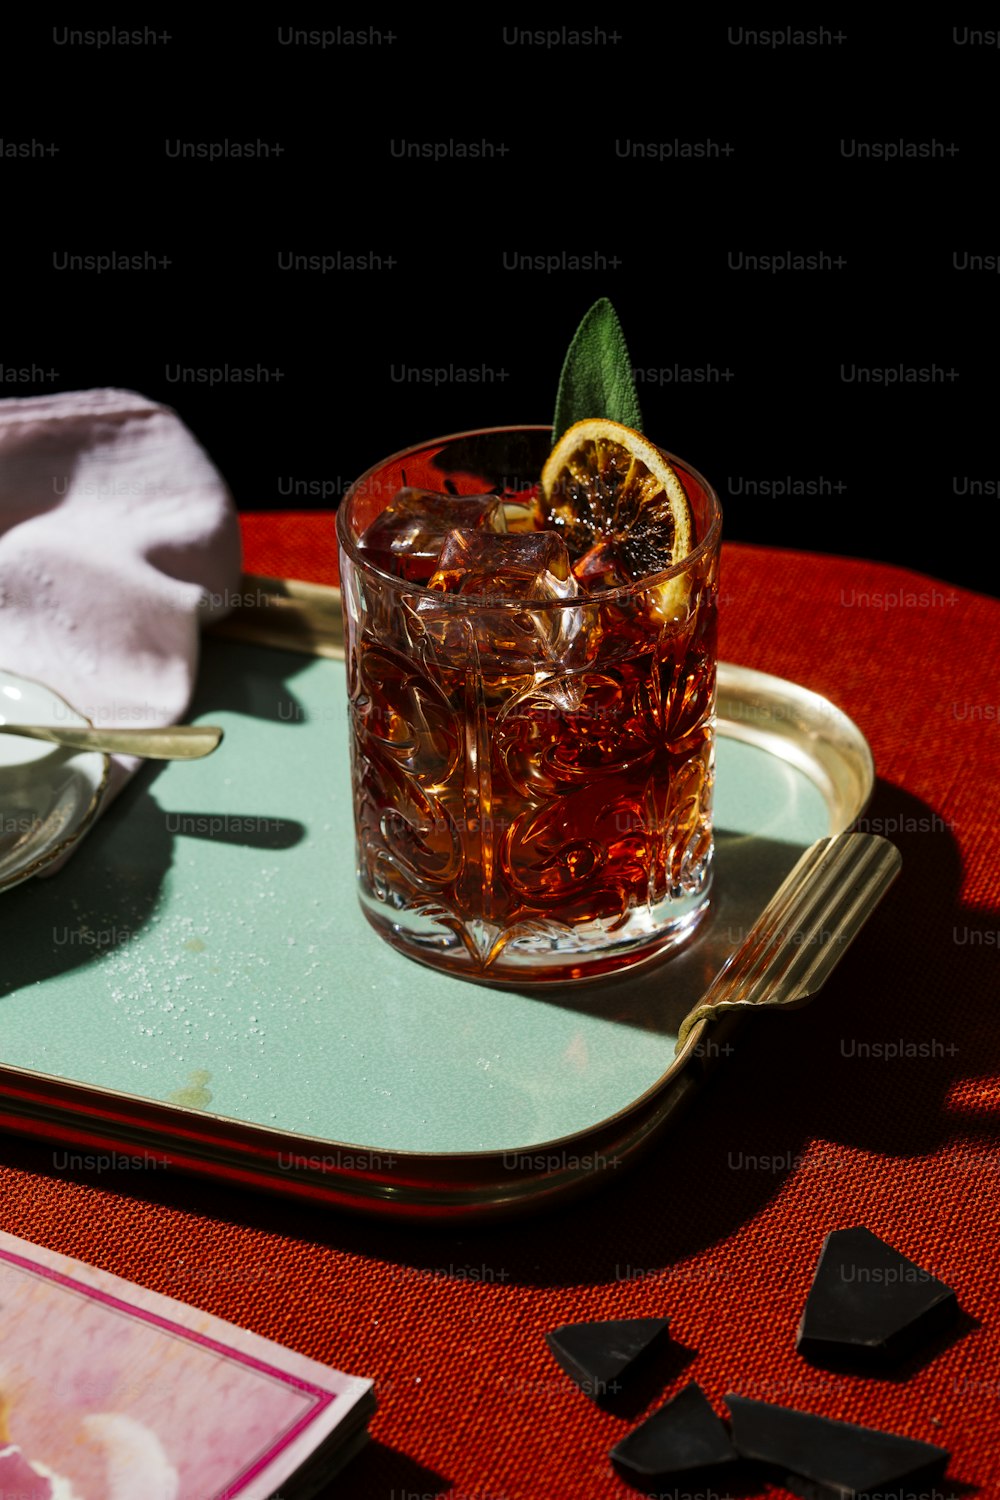 Negroni, un cocktail Iba, avec 1/3 de gin, 1/3 d’amer, 1/3 de vermut, dans un style contemporain coloré et riche.